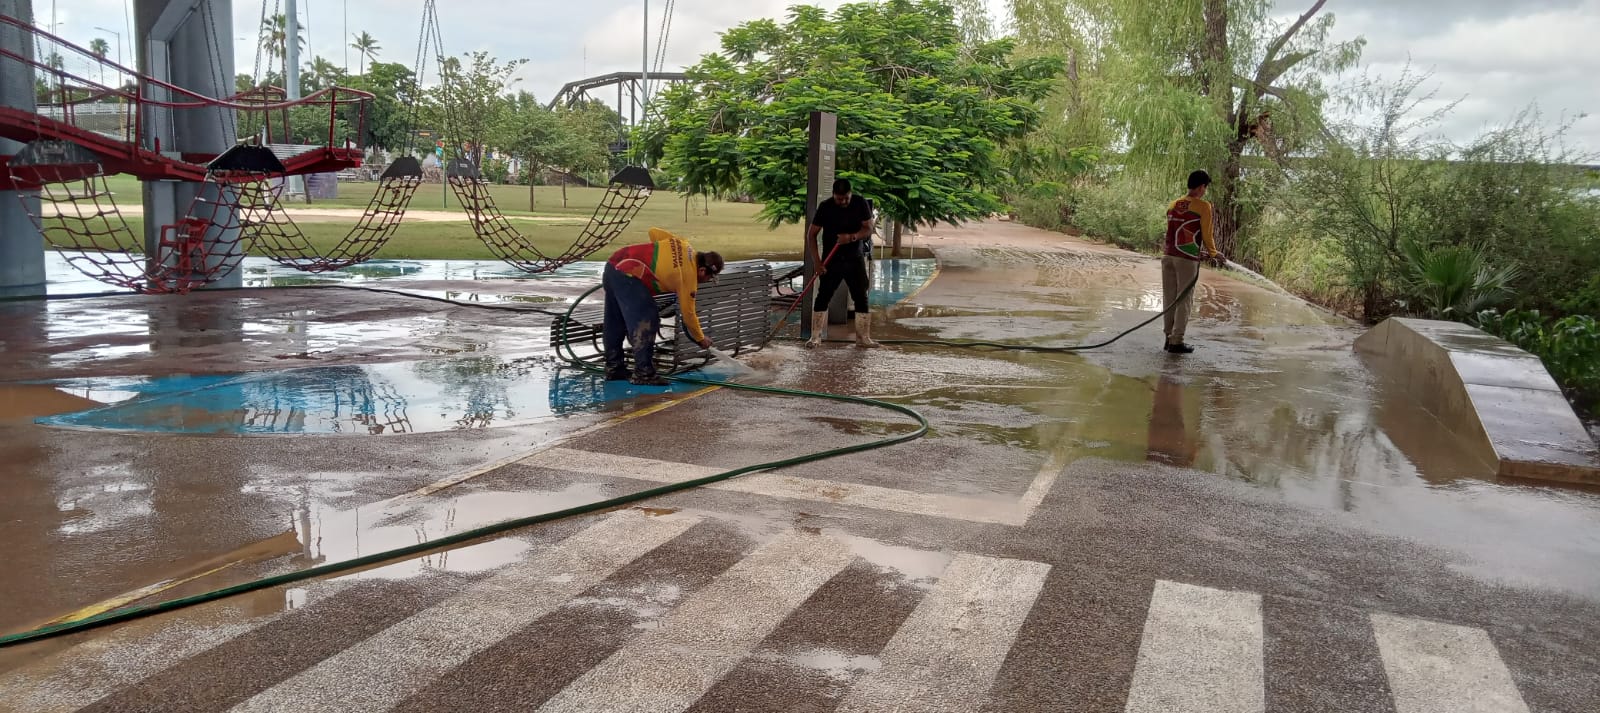 17.08.22 labores de limpieza en el Parque Acuático (8)